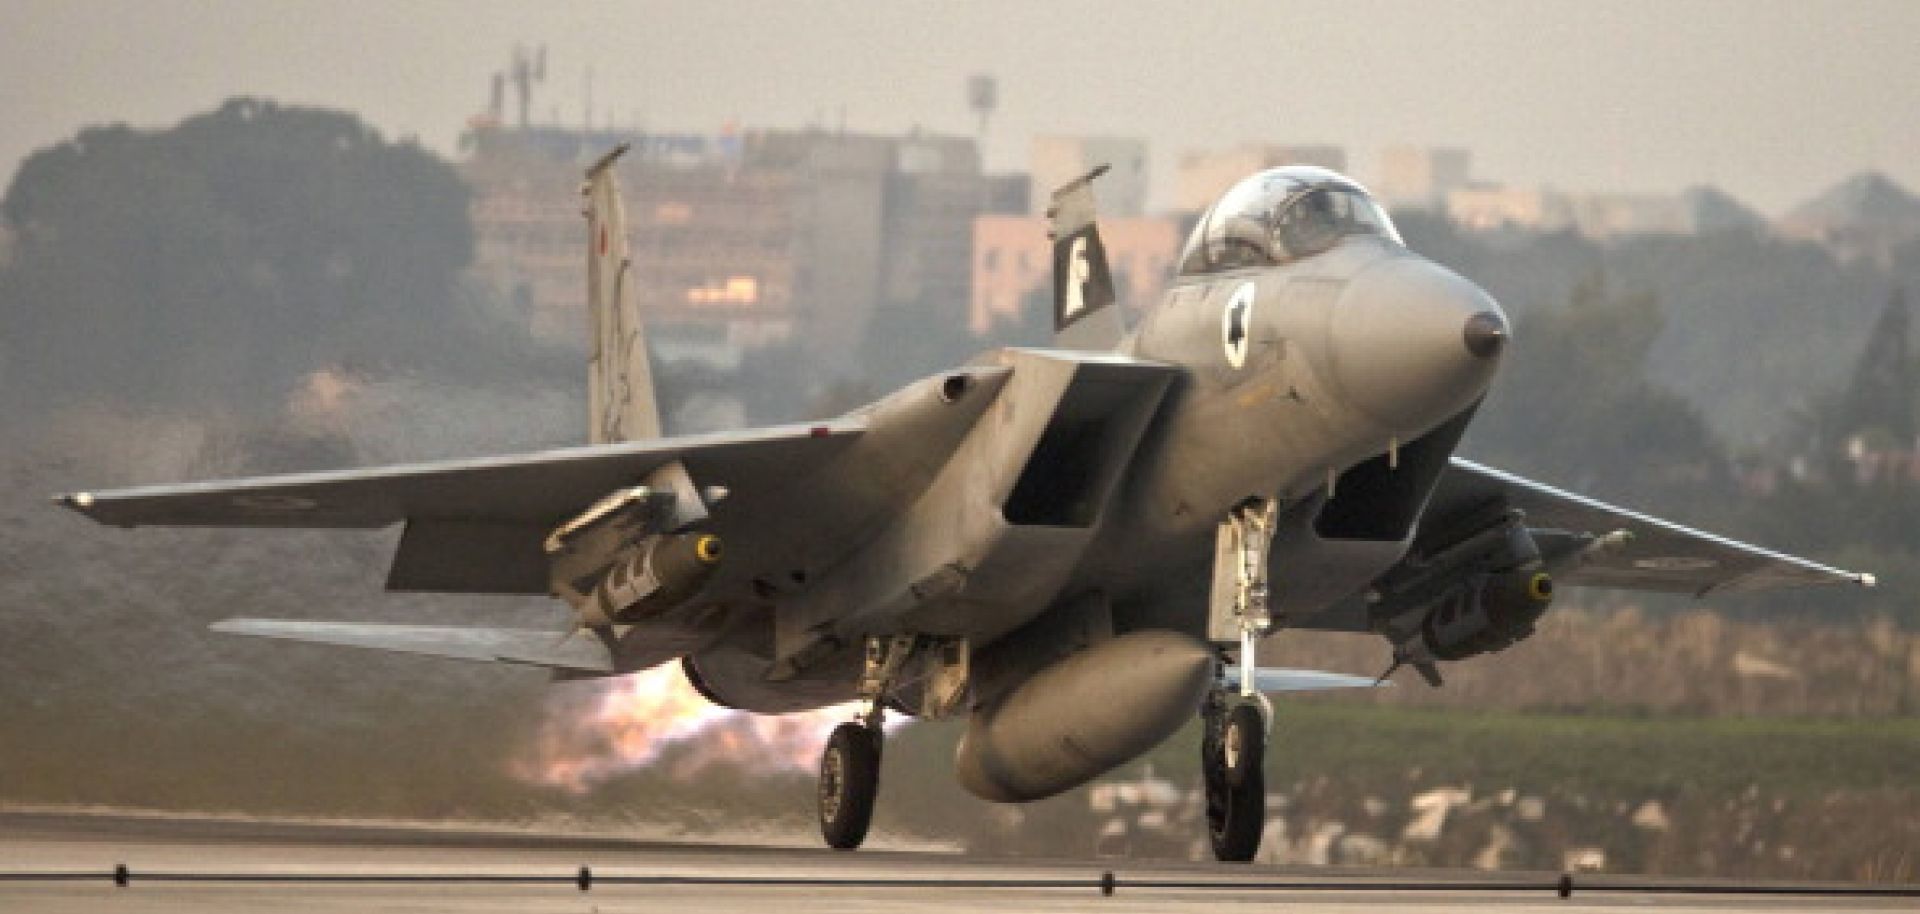 Israel: An Airstrike at the Syria-Lebanon Border